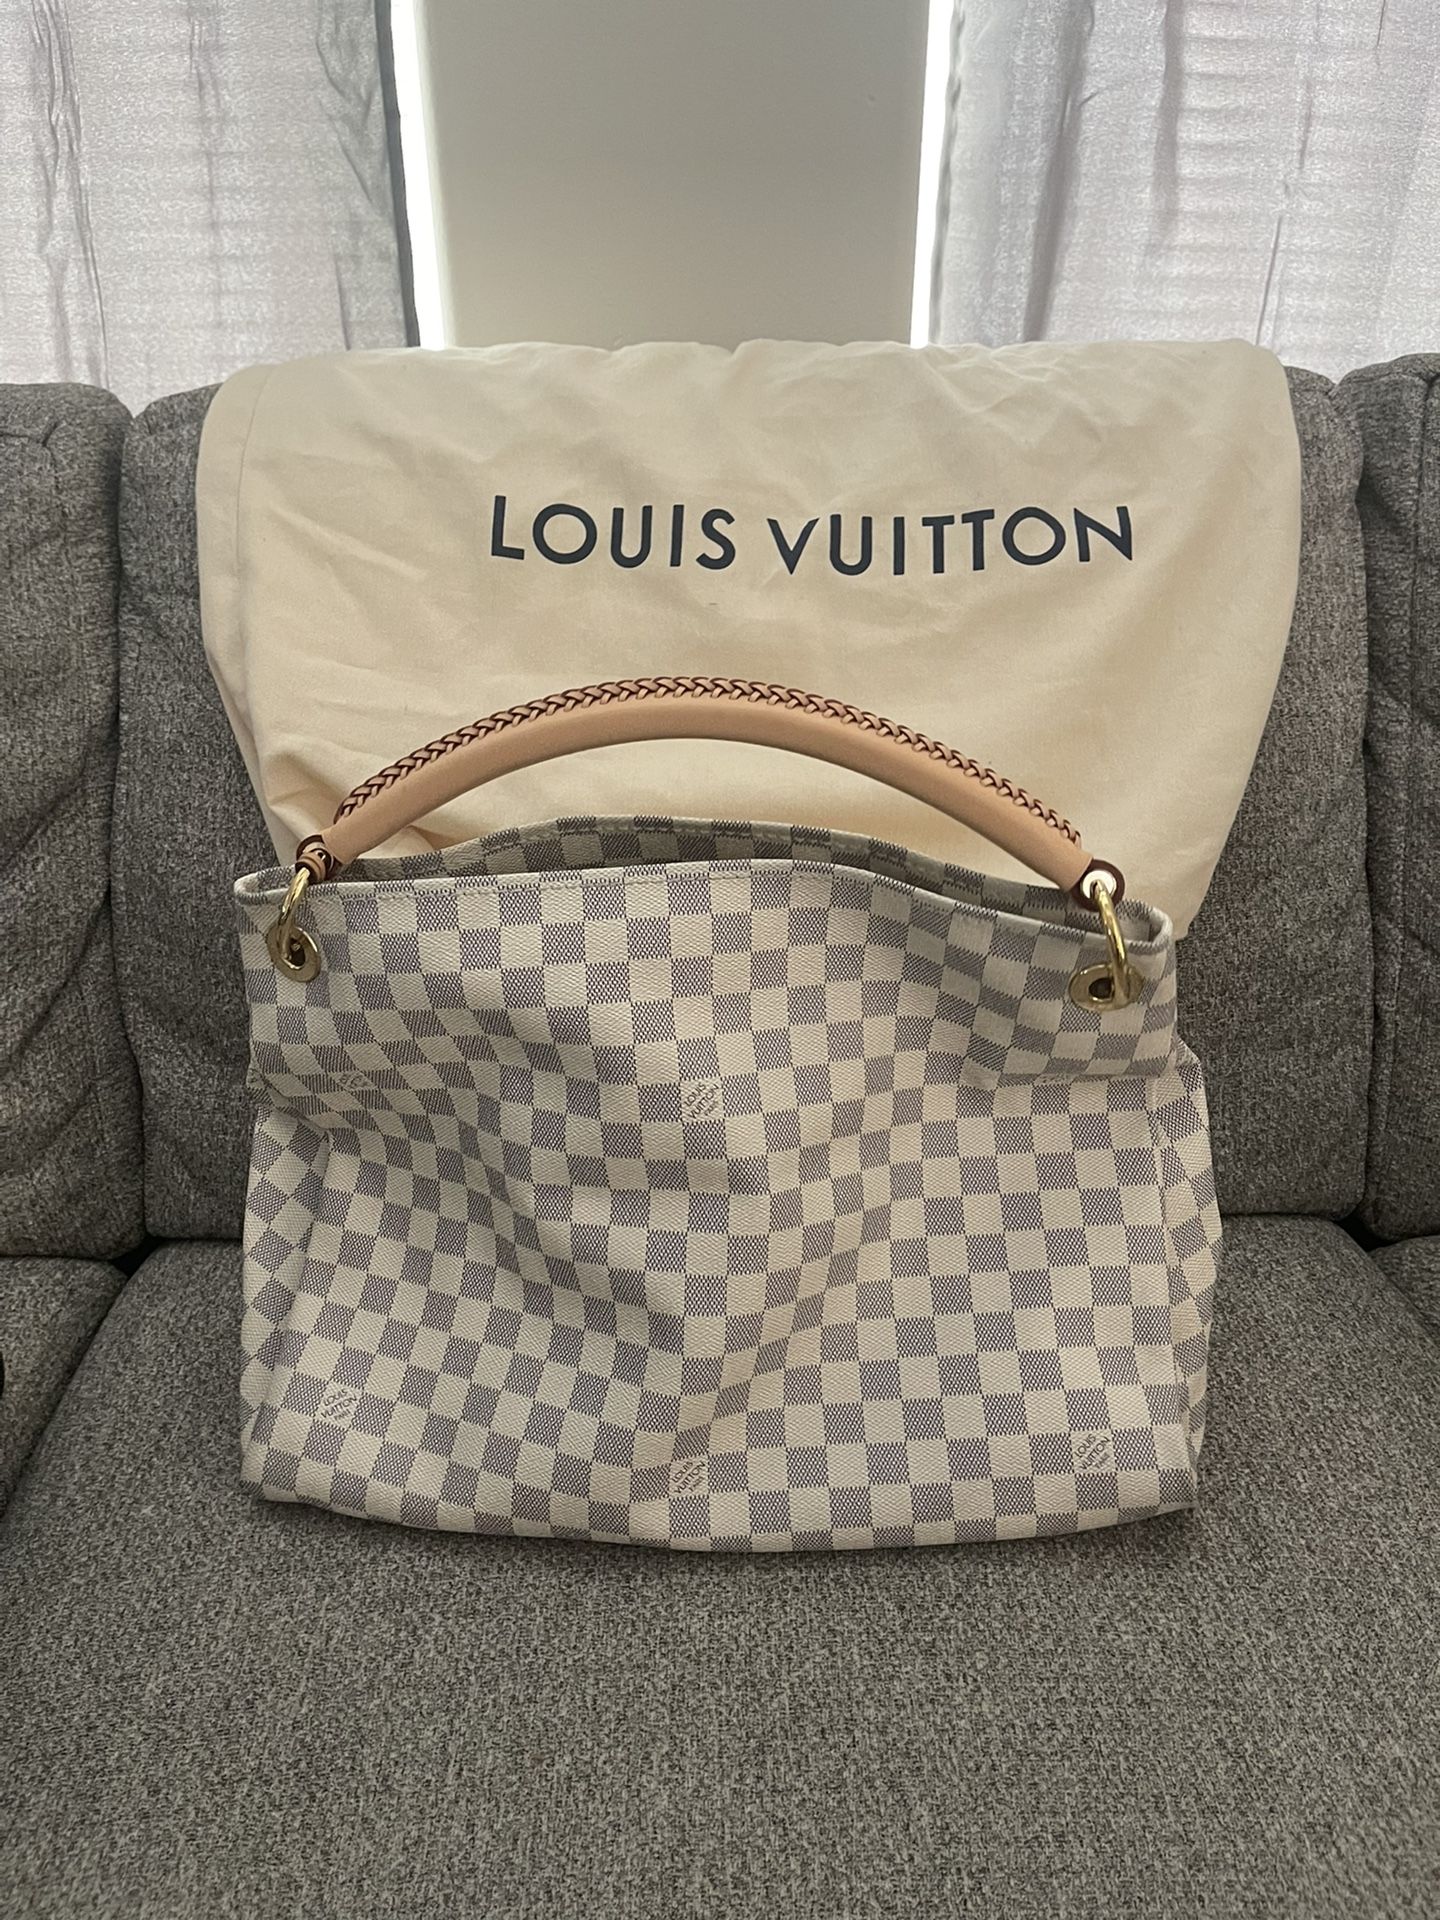 Authentic Louis Vuitton Bag